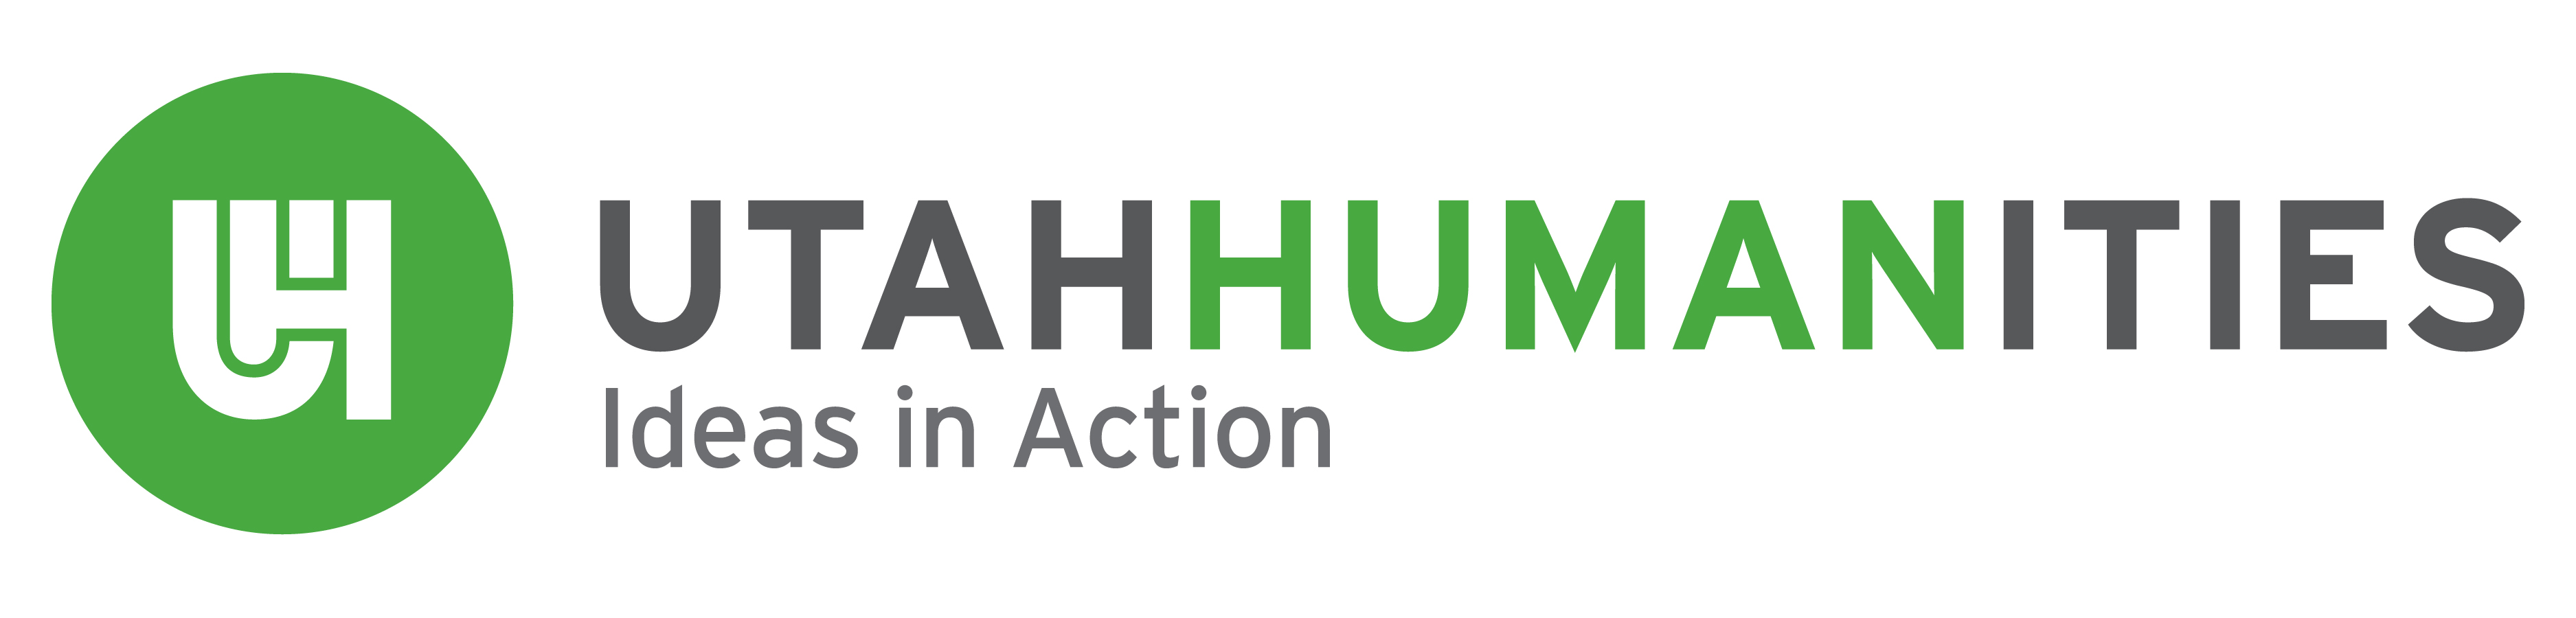 The logo of Utah Humanities.